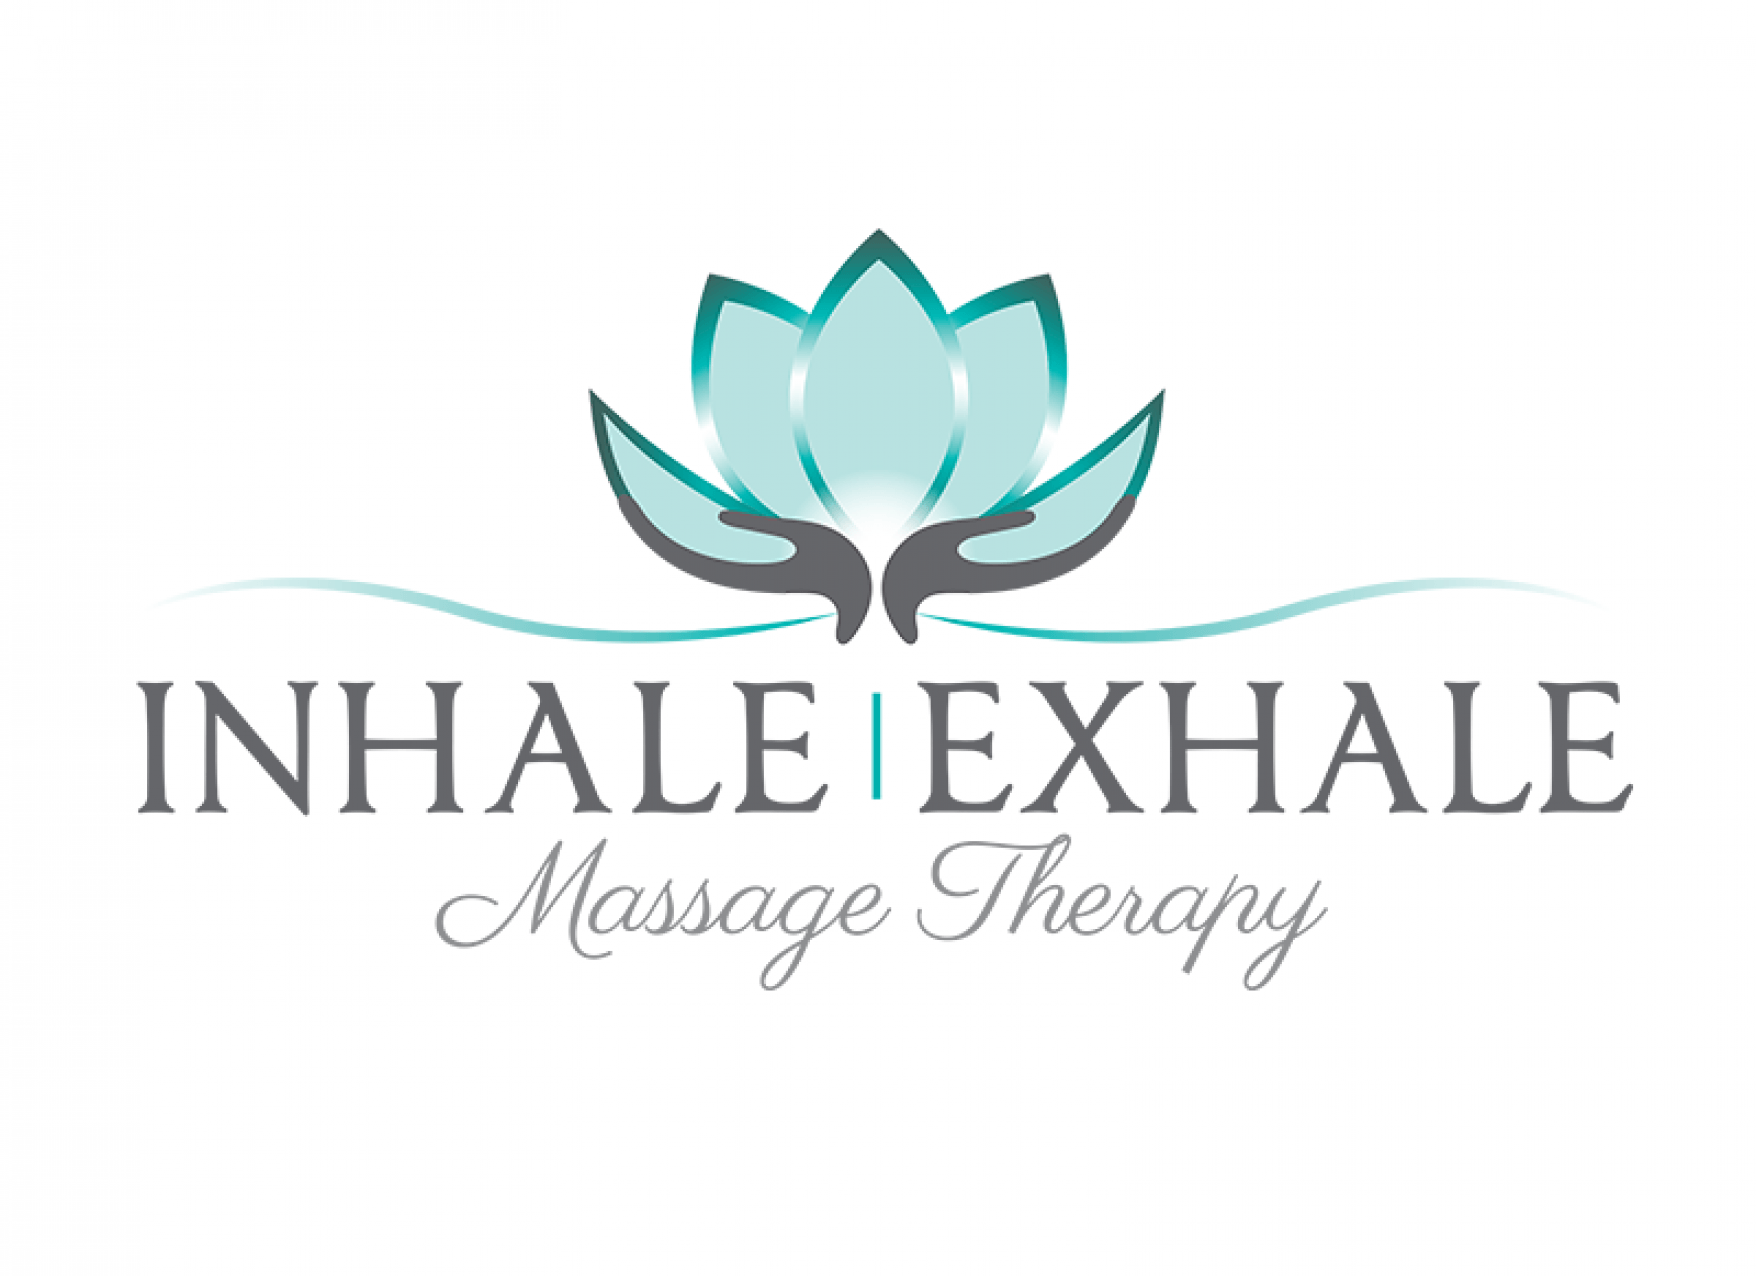 Inhale Logo - Inhale Exhale Massage Therapy logo - EB Designs, LLC